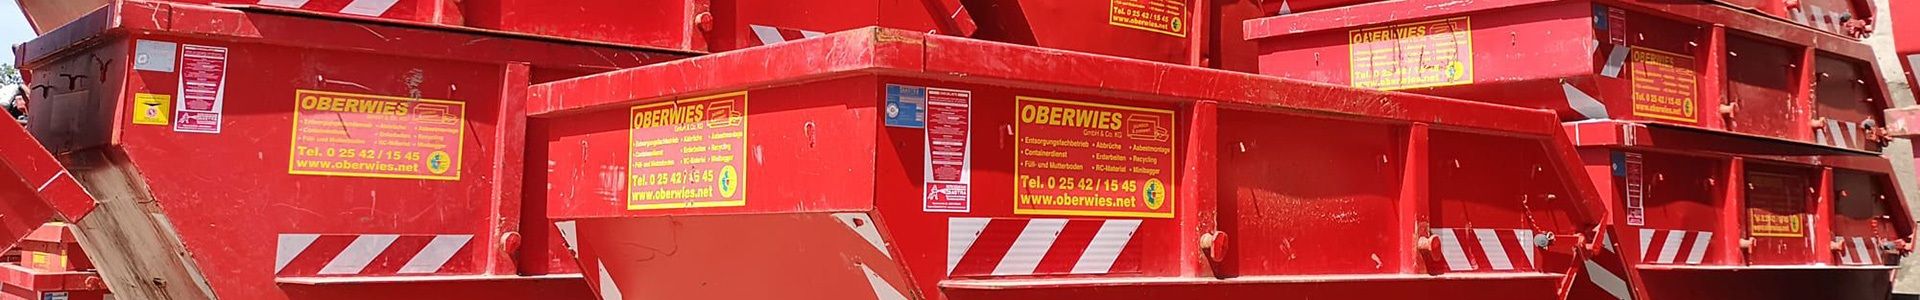 Oberwies GmbH und Co. KG